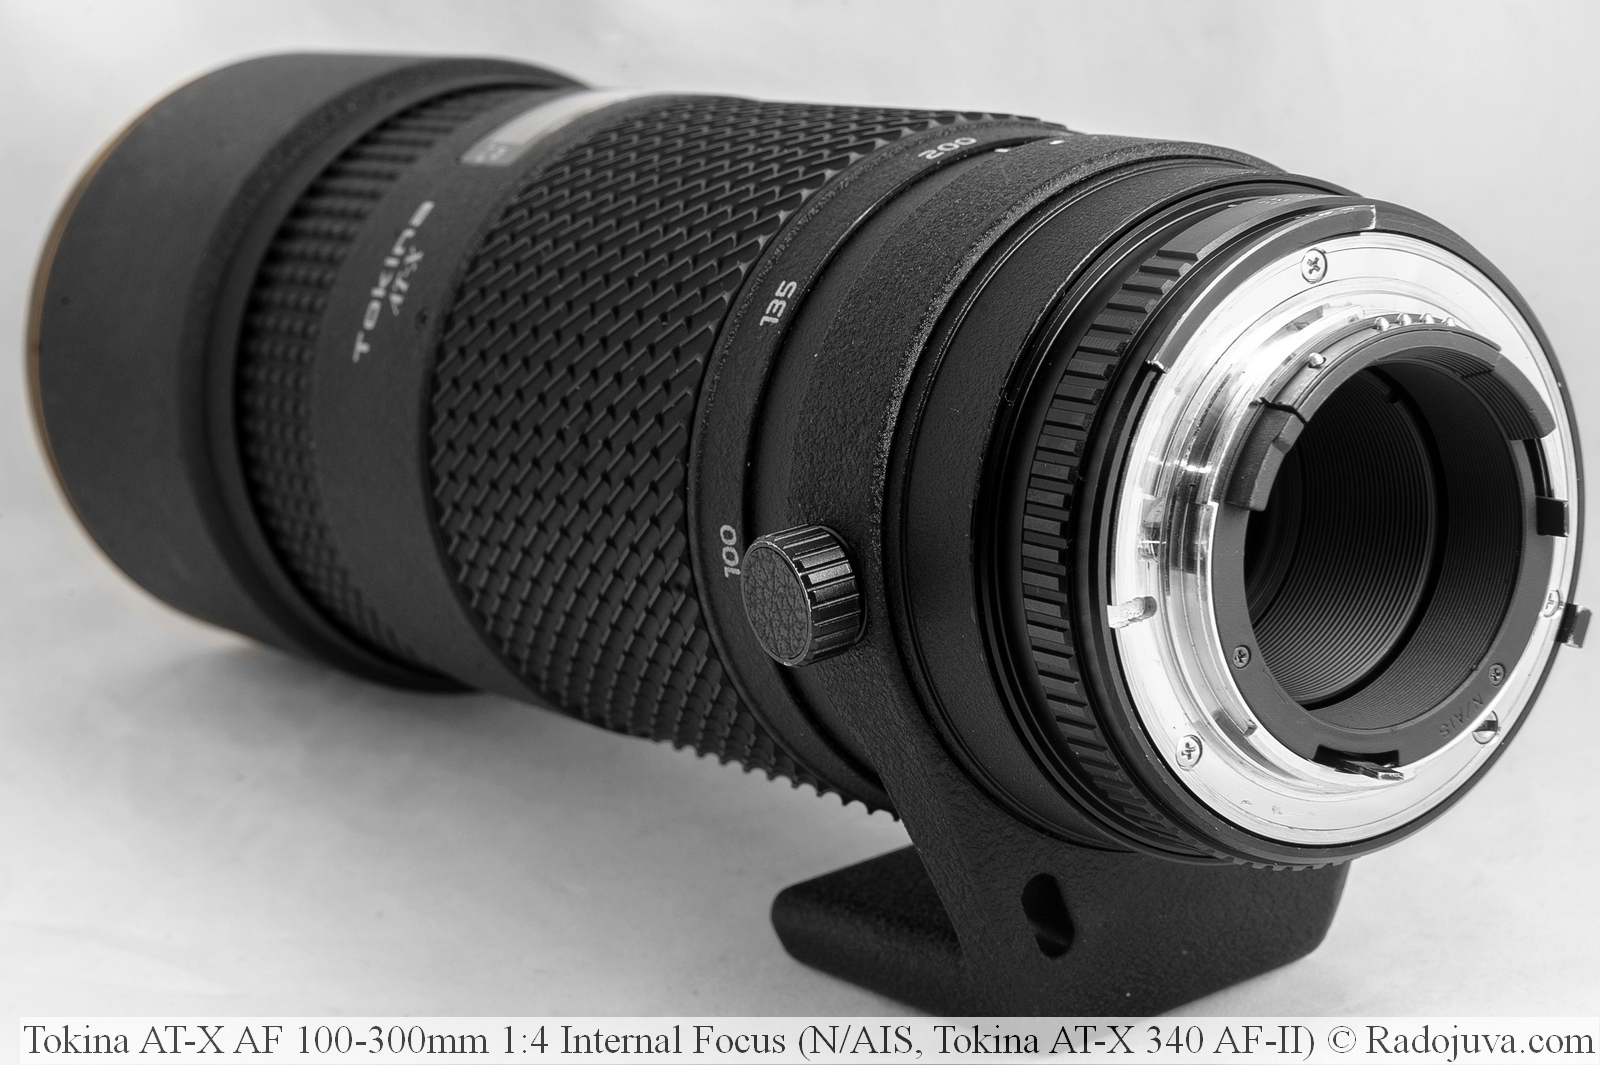 Tokina AT-X AF 100-300mm 1:4 Internal Focus (N/AIS, Tokina AT-X 340 AF-II)